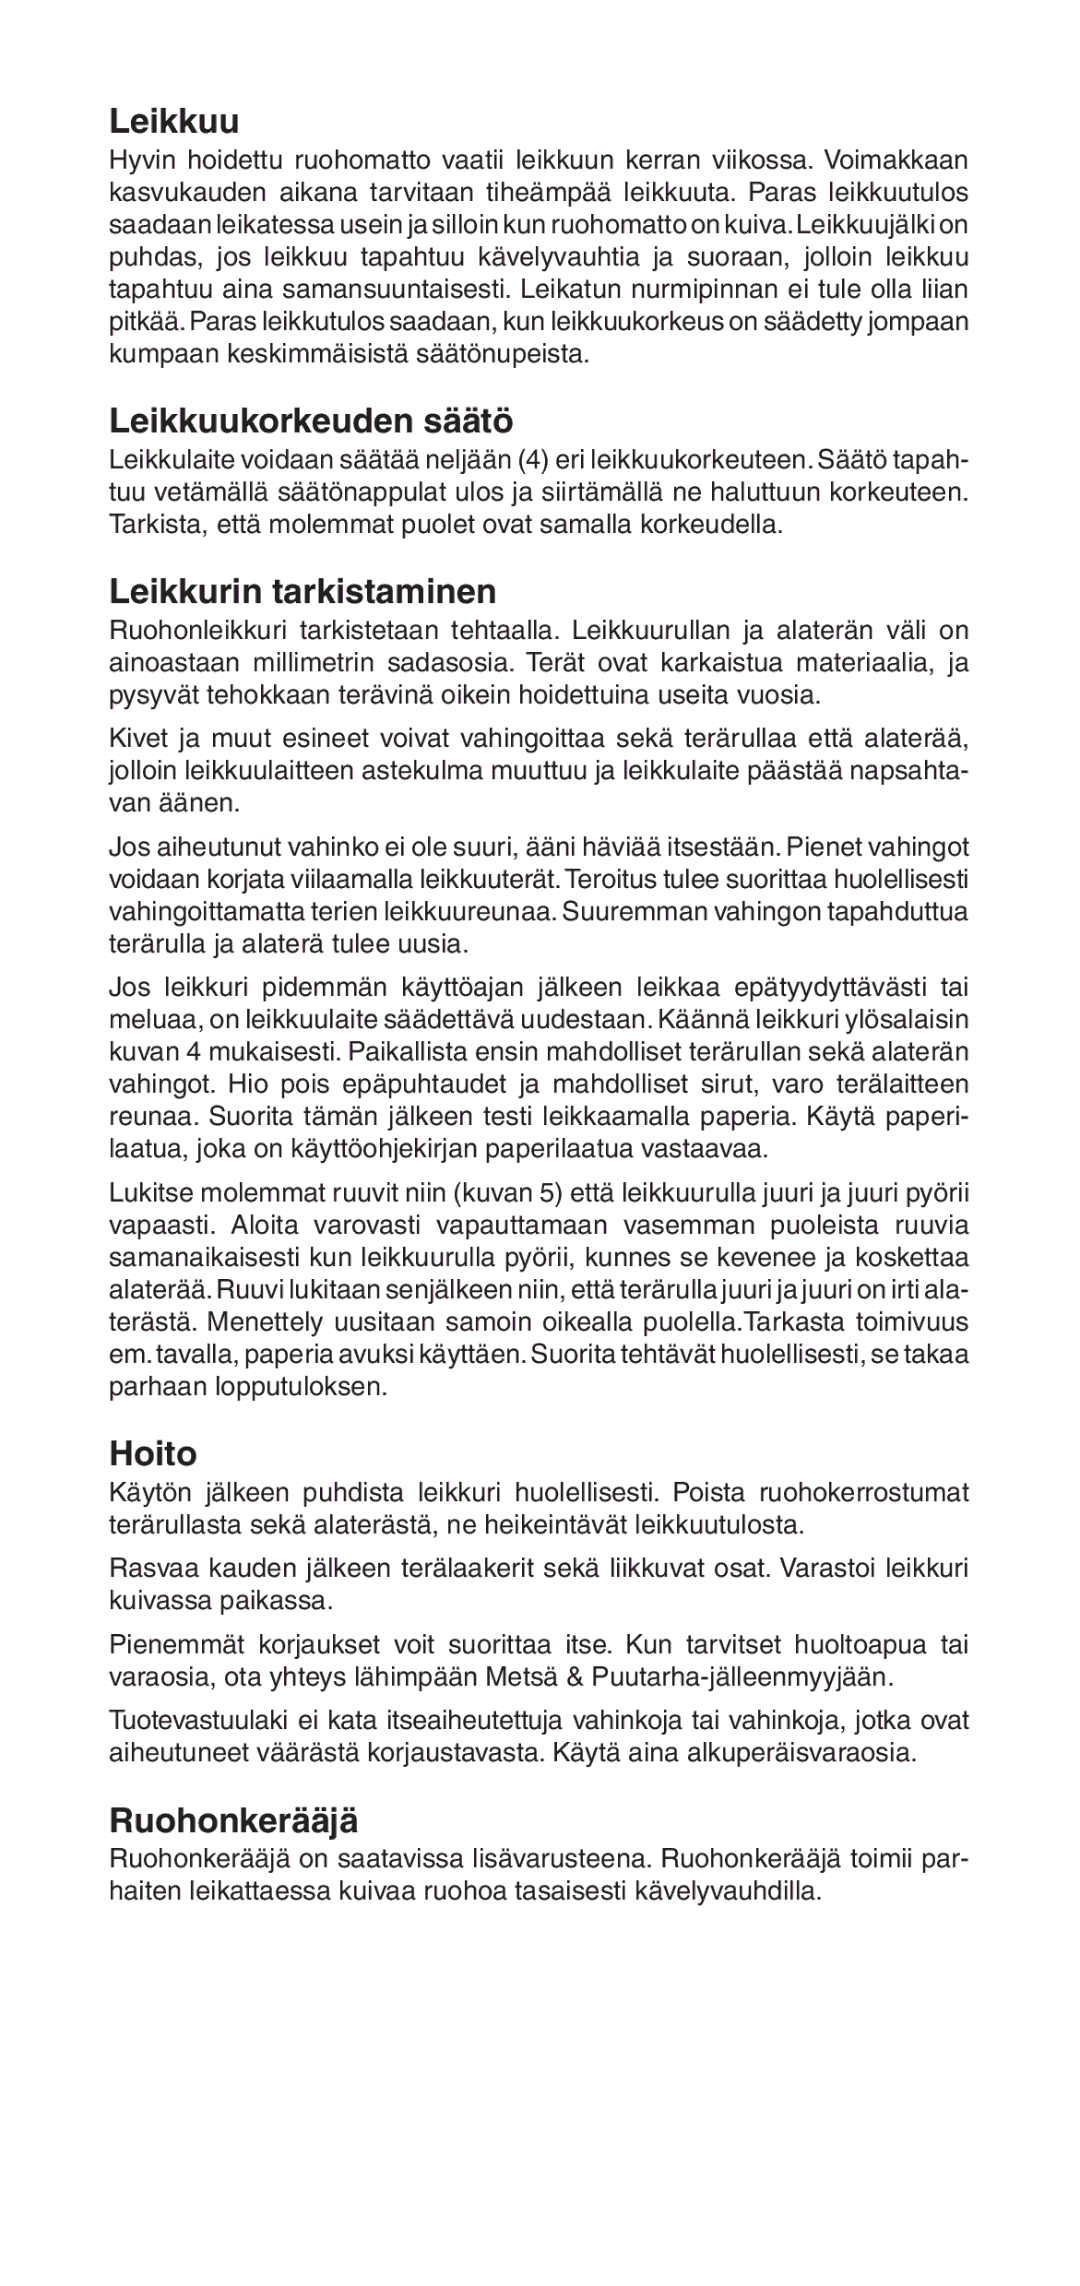 Husqvarna NovoLette owner manual Leikkuukorkeuden säätö, Leikkurin tarkistaminen, Hoito, Ruohonkerääjä 